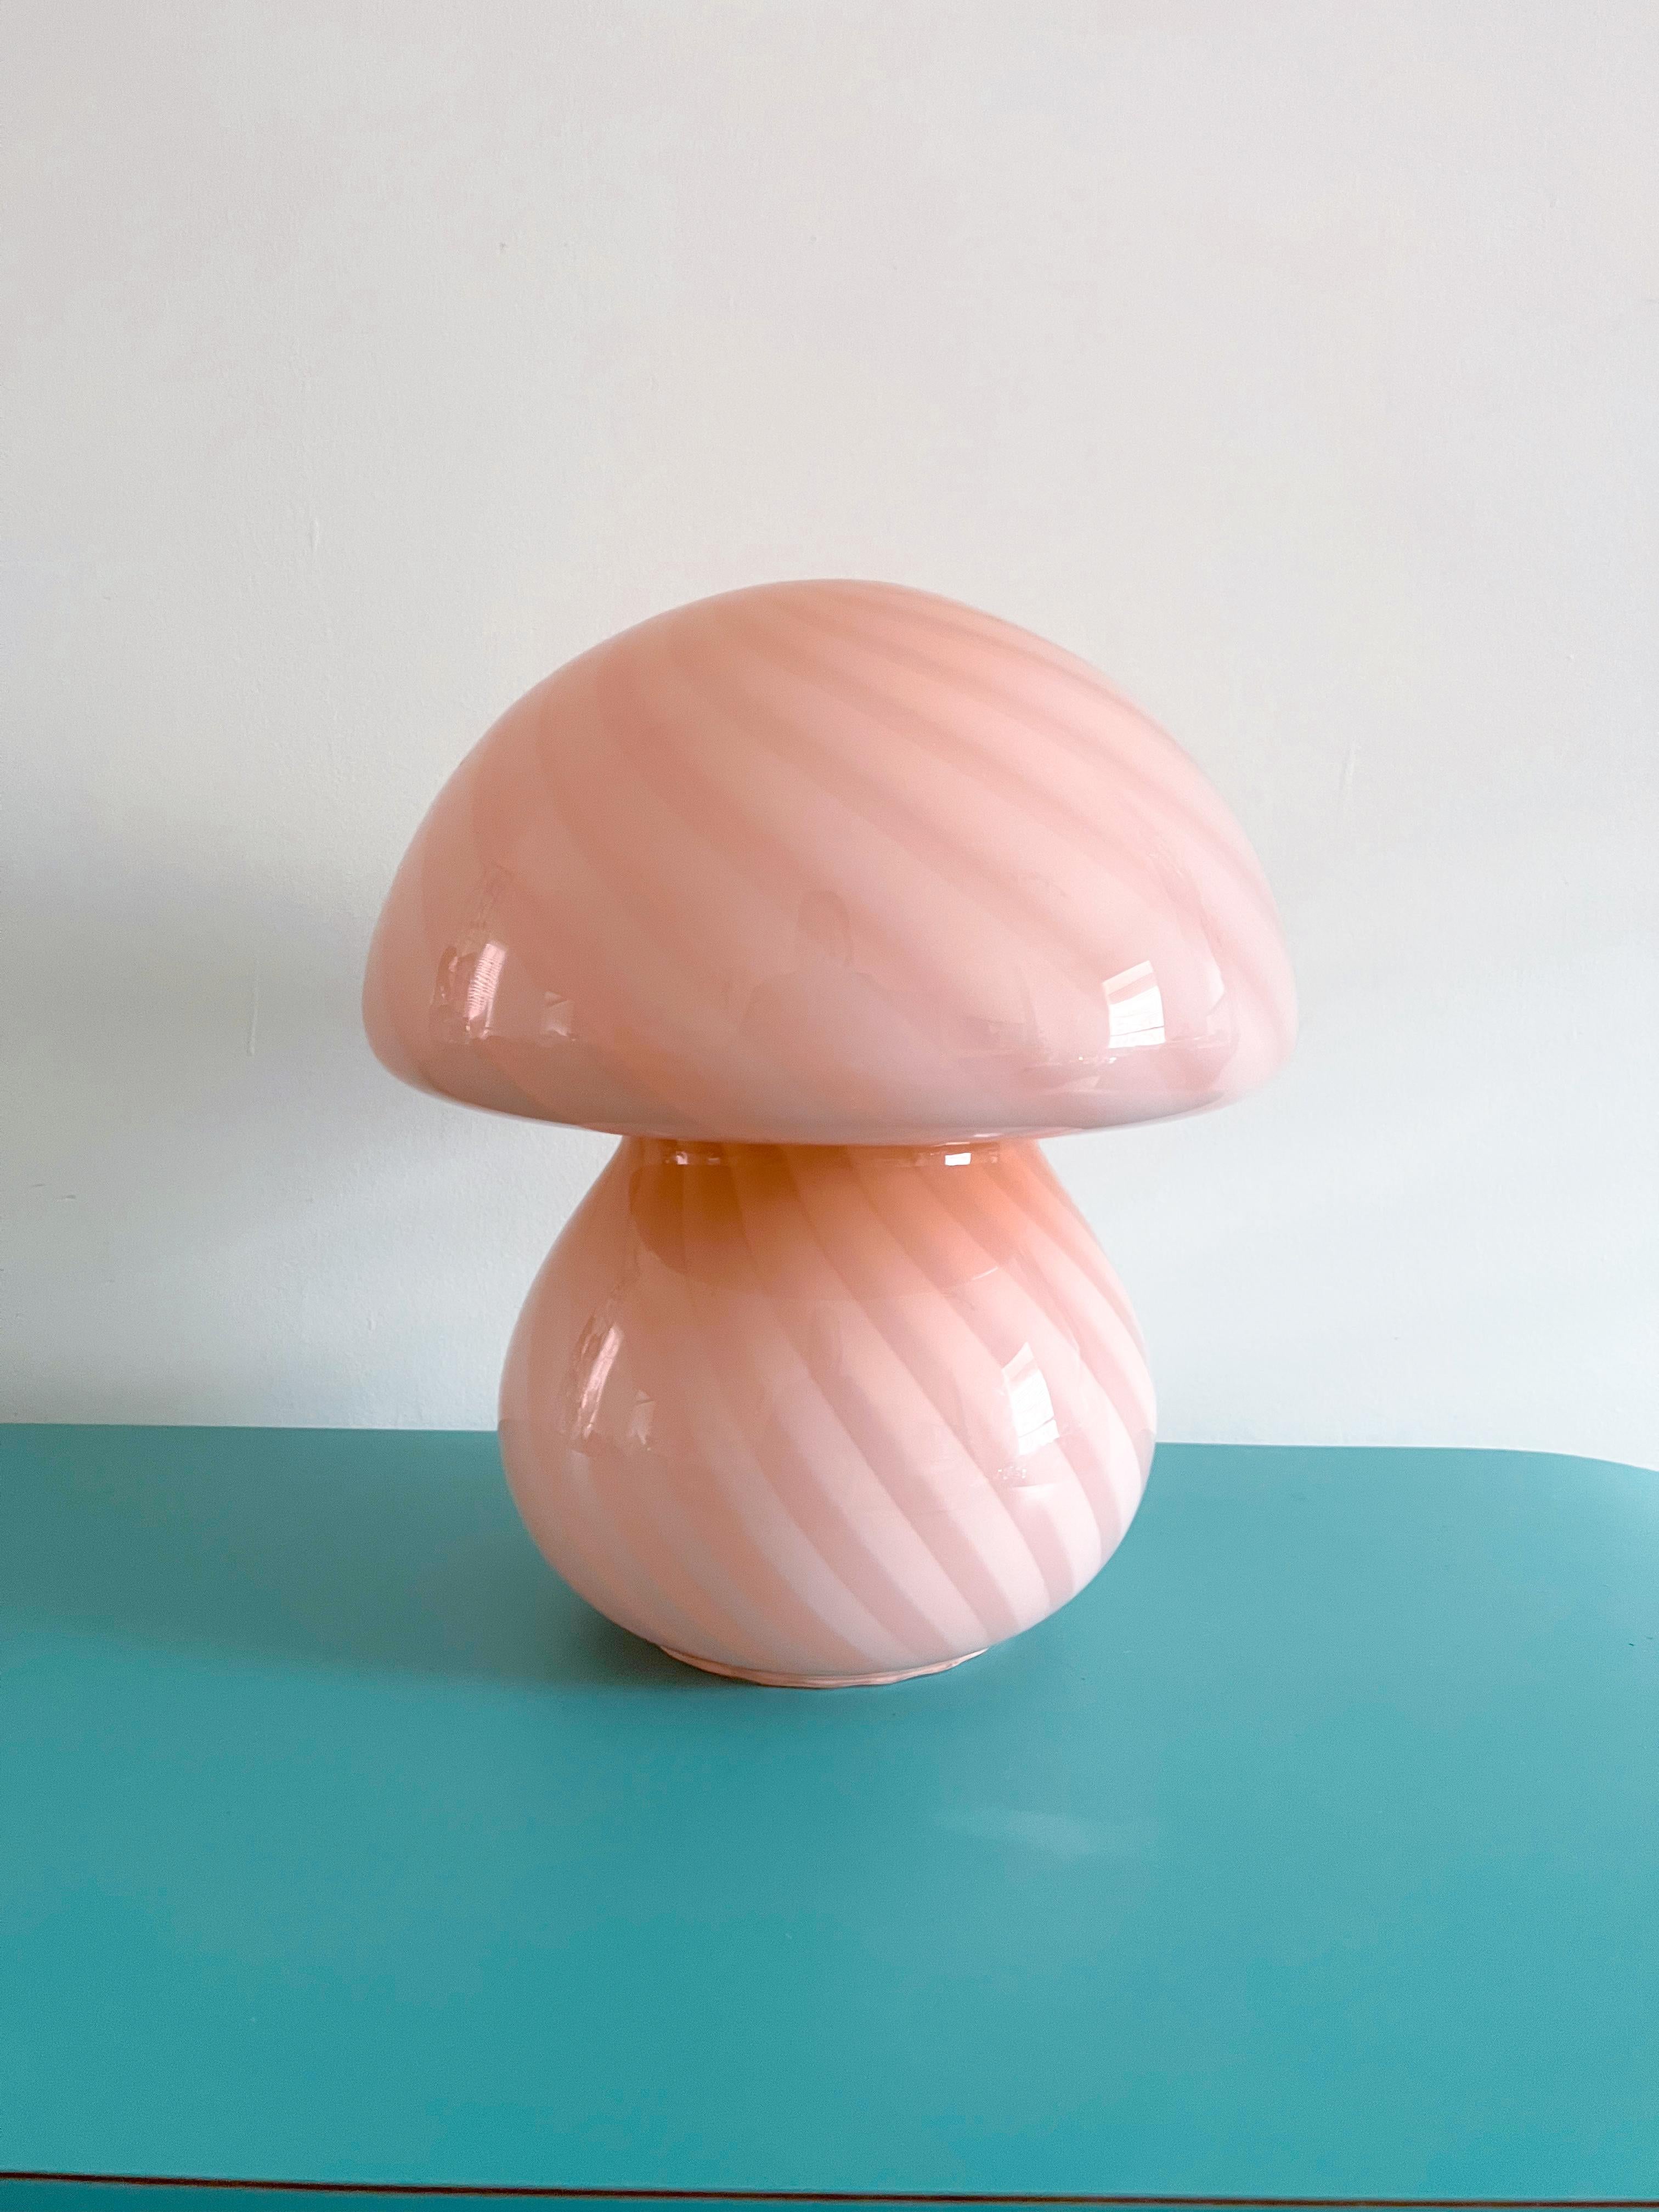 Merveilleuse lampe à champignon rose de Murano fabriquée dans les années 1970.
Cette lampe étonnante est fabriquée à la main à partir d'un seul morceau de verre d'art, soufflé à la bouche et encastré dans sa forme rare de 